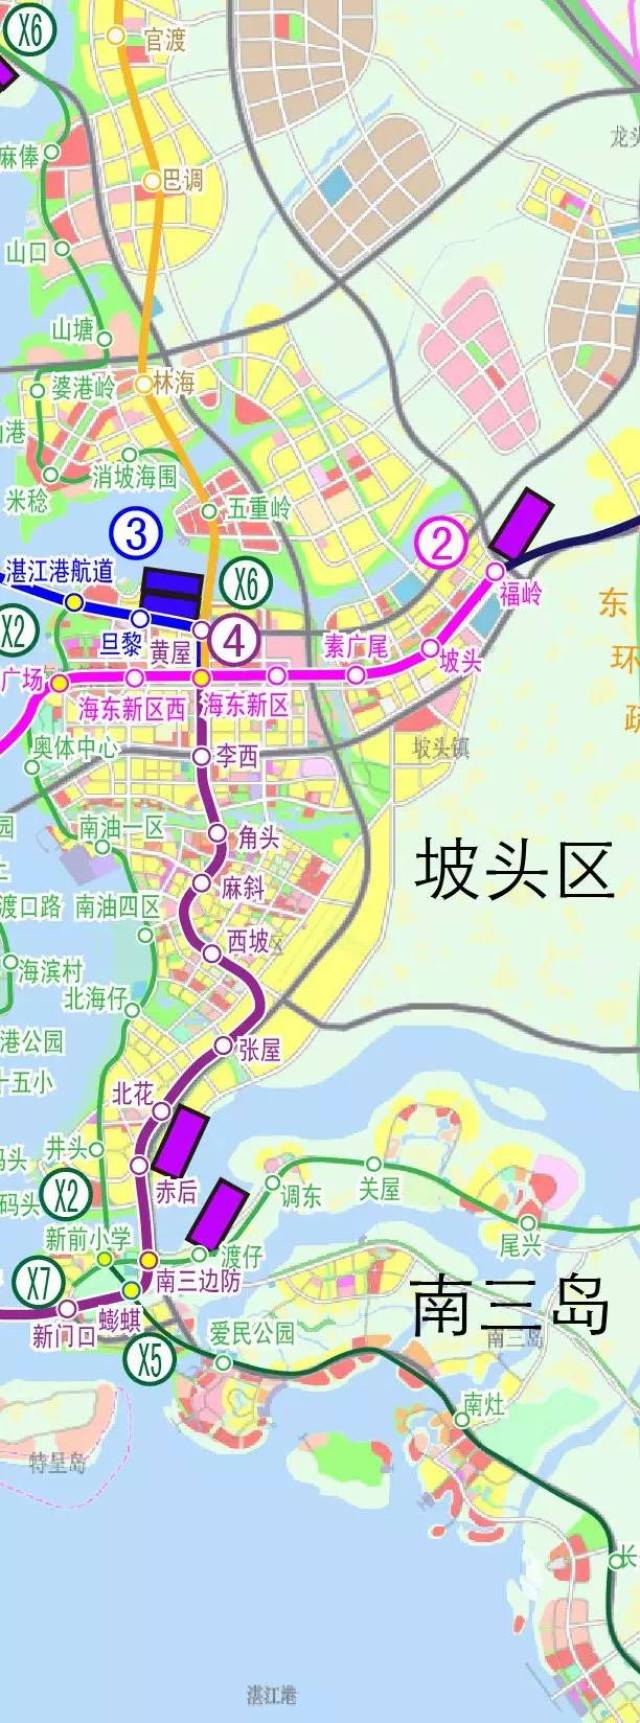 2条城市地铁线路 1号线:龙王湾-调顺岛-赤坎-cbd-人民大道-霞山-宝满图片